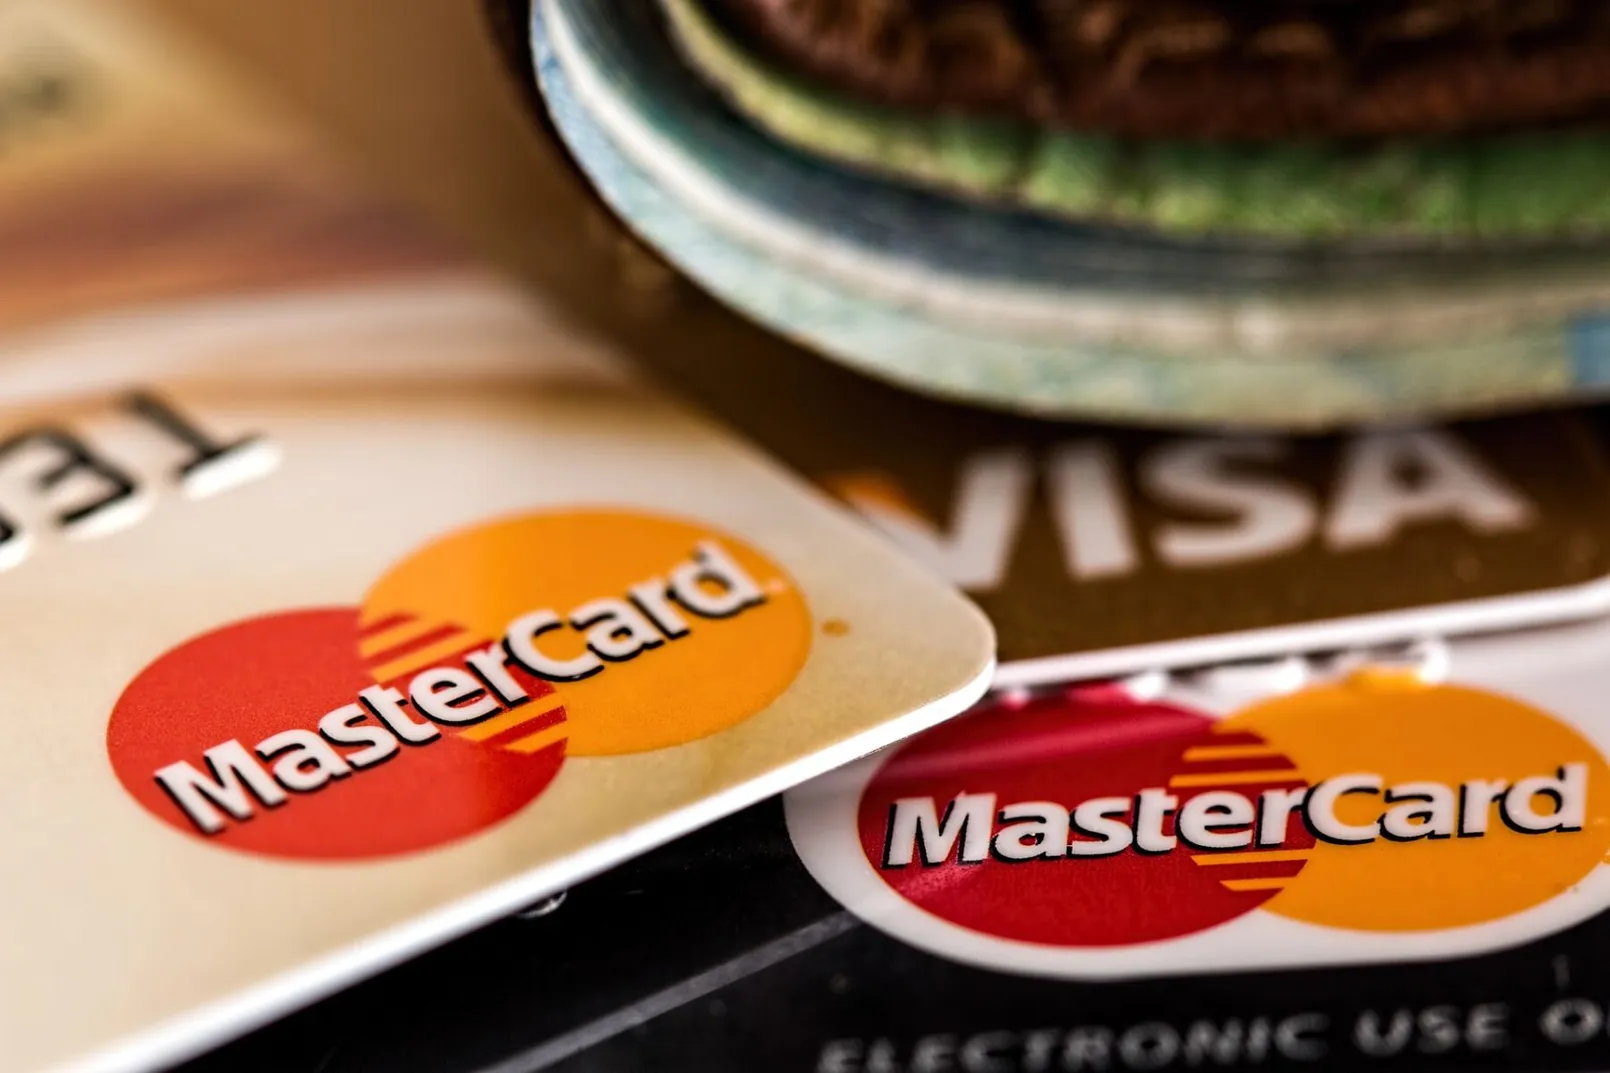 Credit Card mastercard